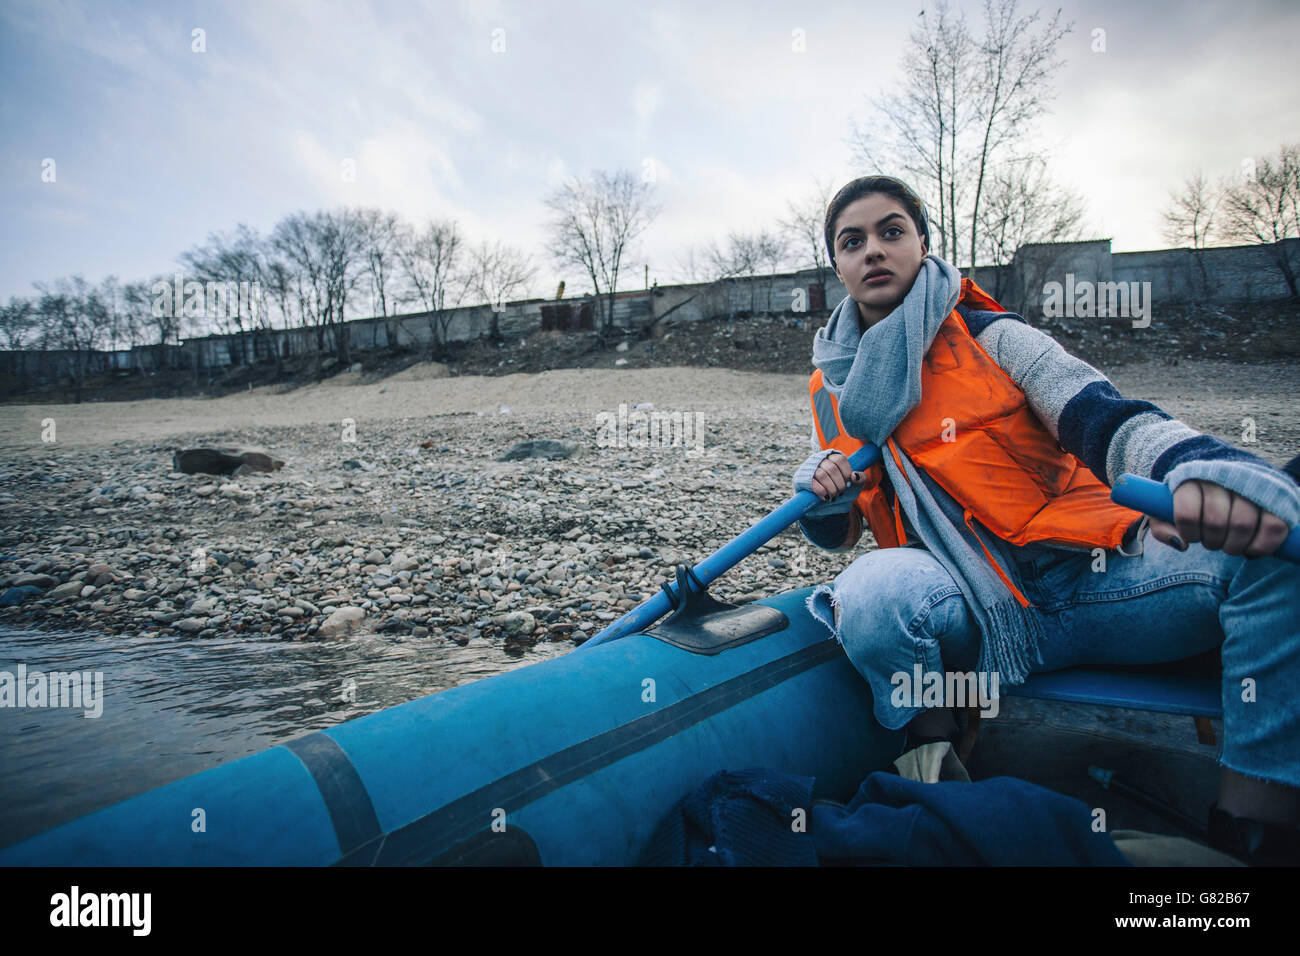 Adolescente vistiendo chalecos salvavidas mientras canotaje en el lago Foto de stock